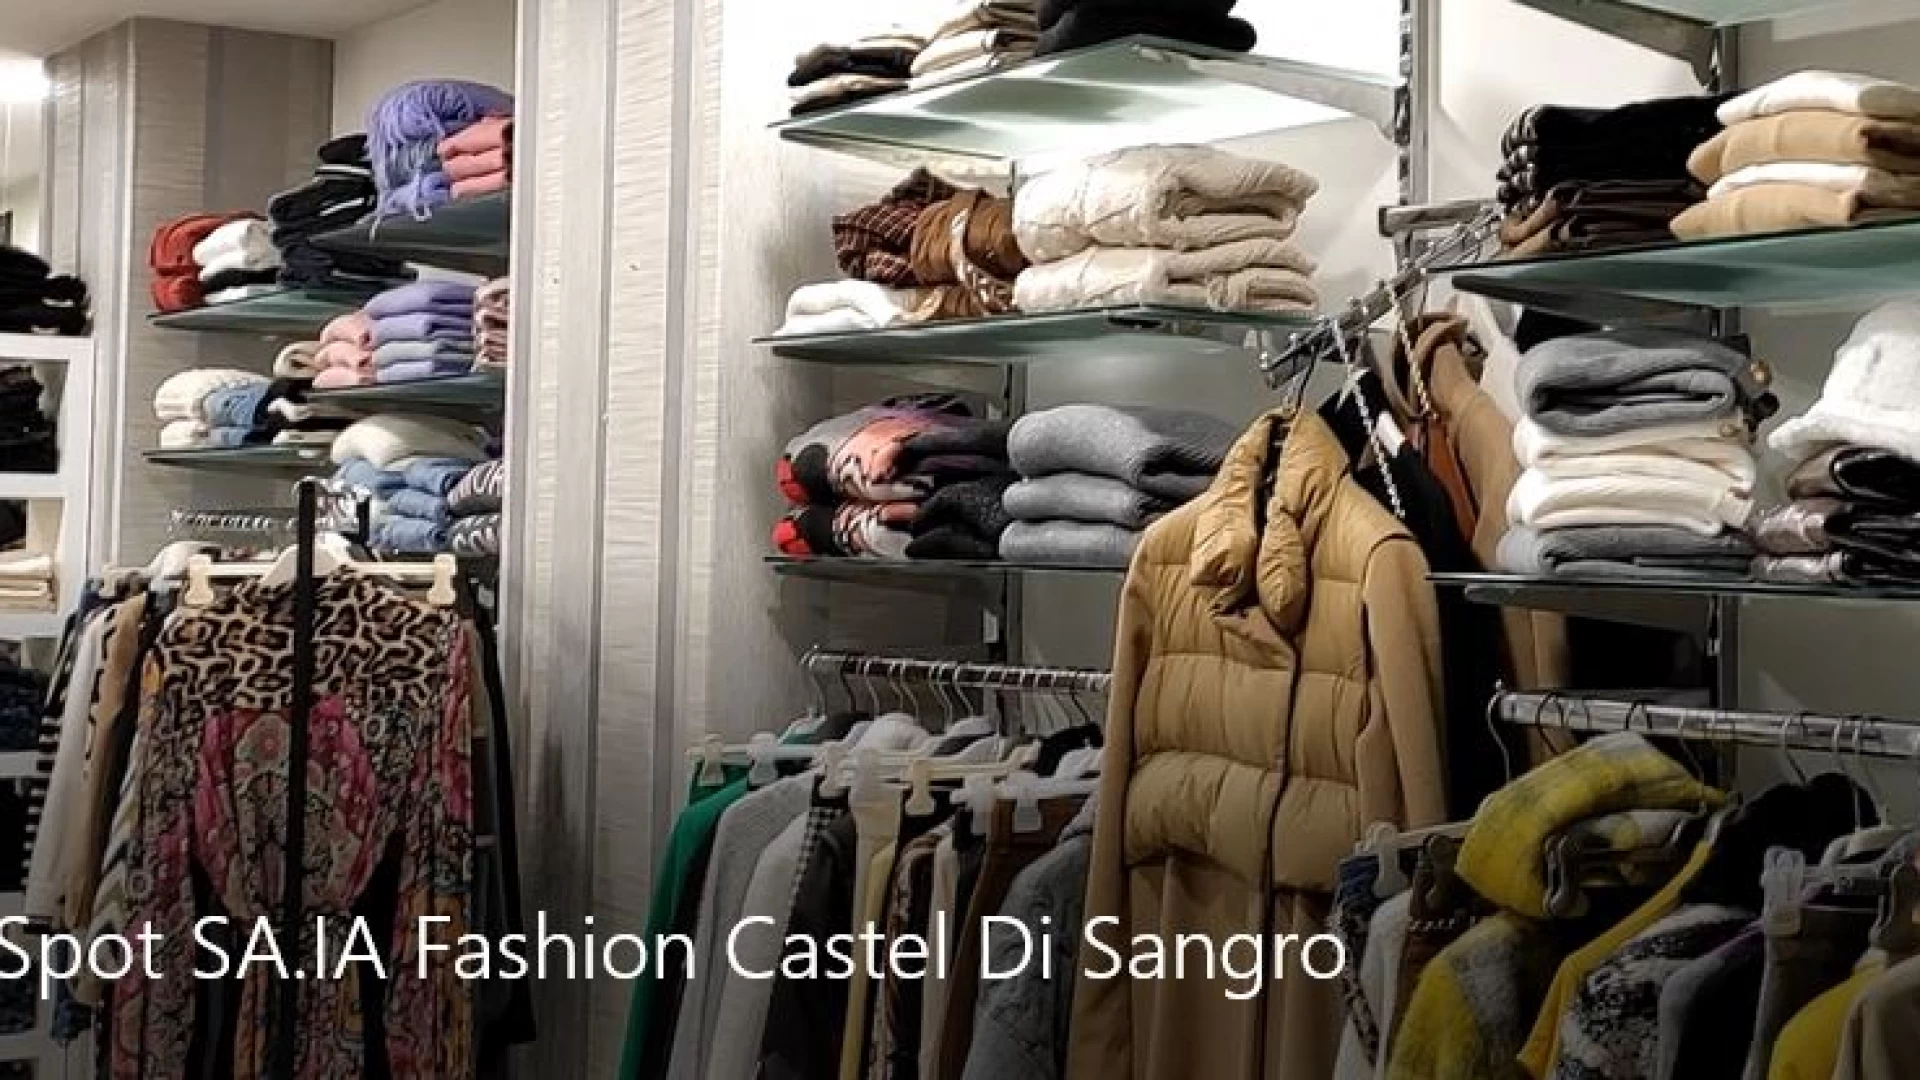 Castel Di Sangro: e' tempo di saldi presso Saiafashion e Yamamay. Visita gli store della città